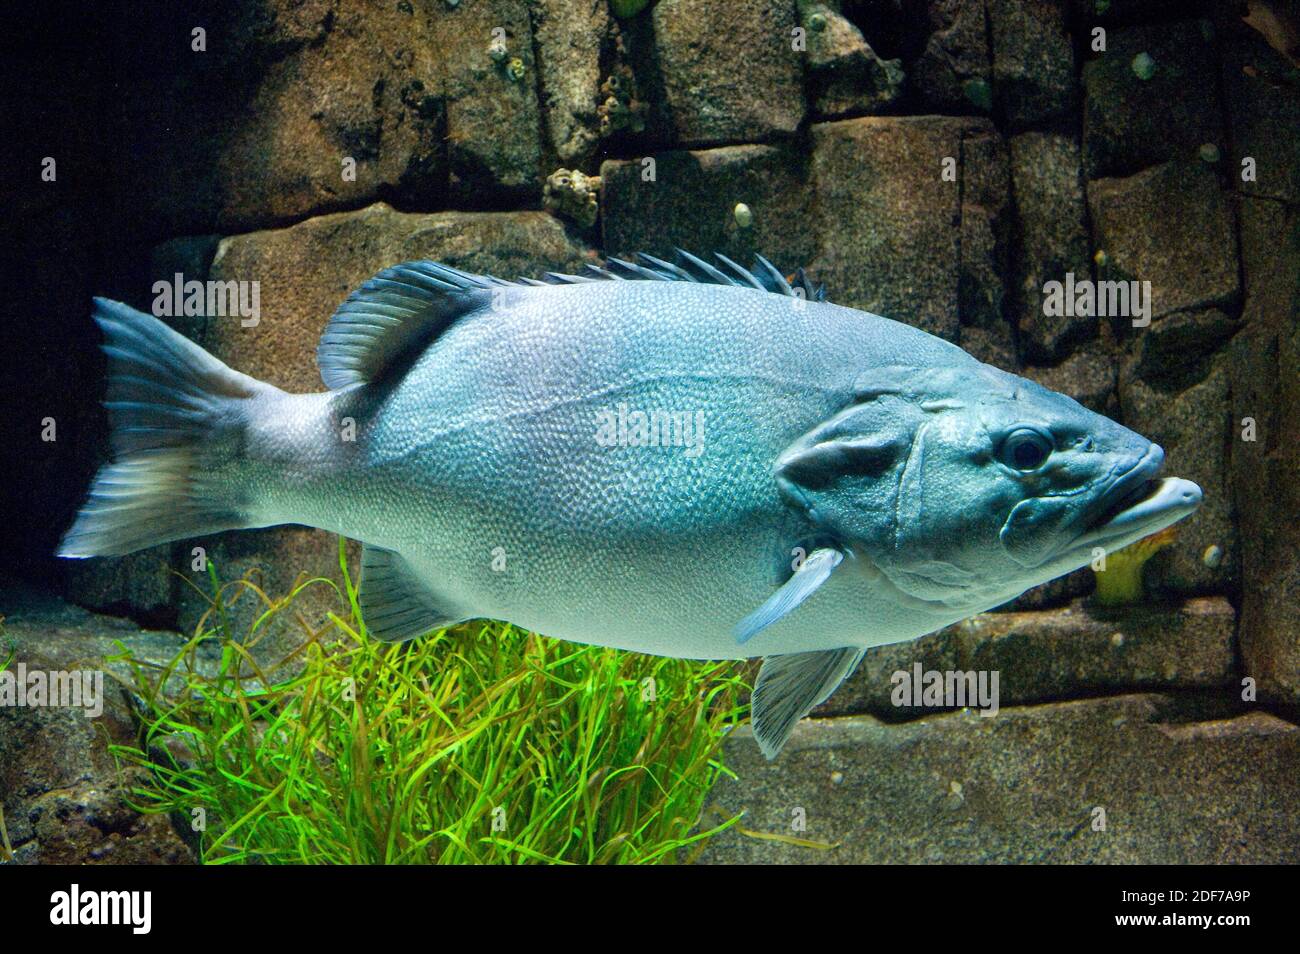 El pez naufragio o lubina (Polyprion americanus) es un pez marino cosmopolita. Foto de stock